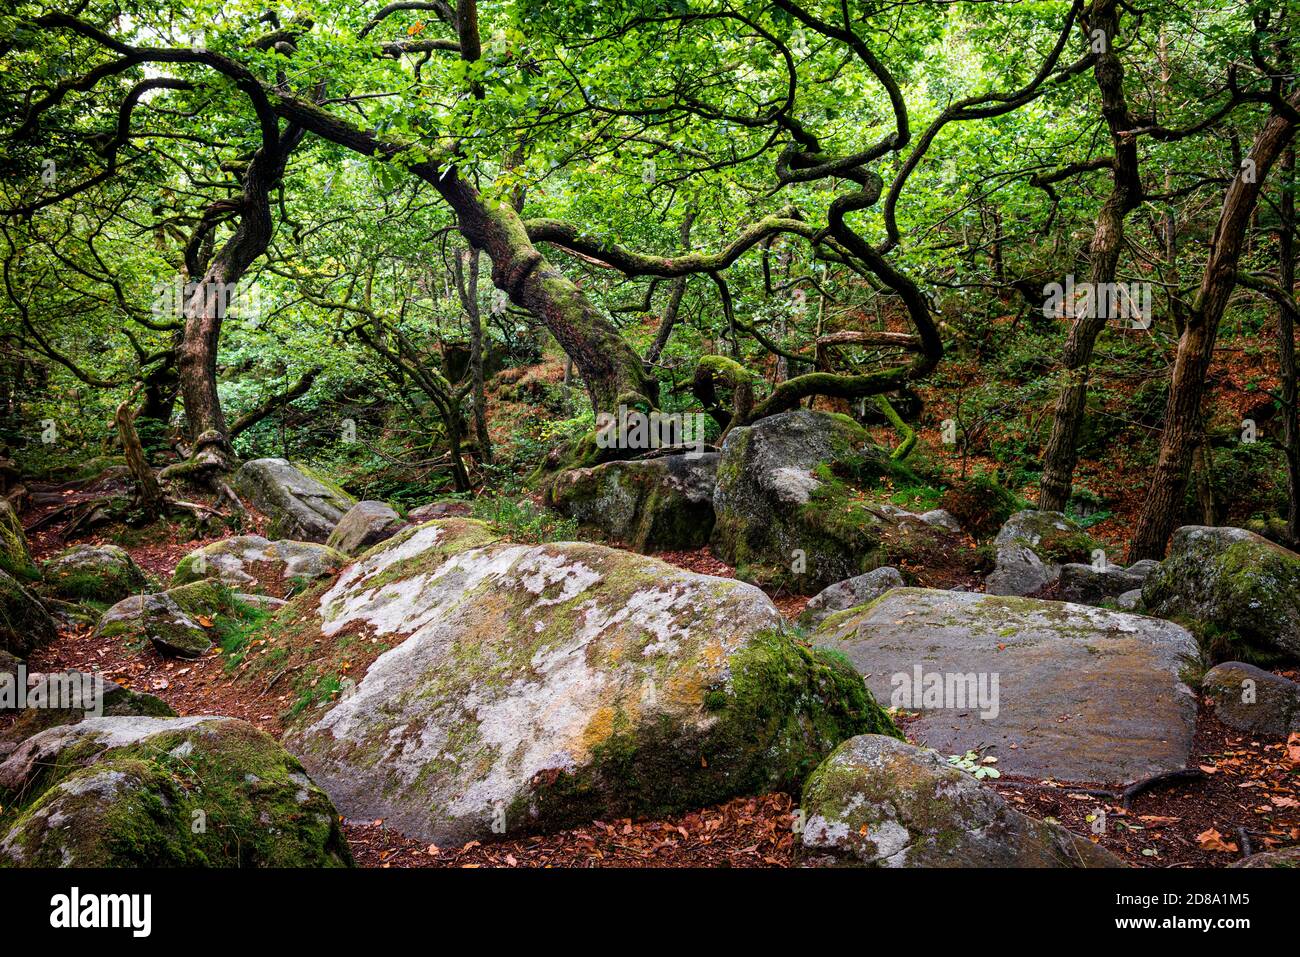 Padley gorge woodland trees,Peak district National park,England,UK Stock Photo